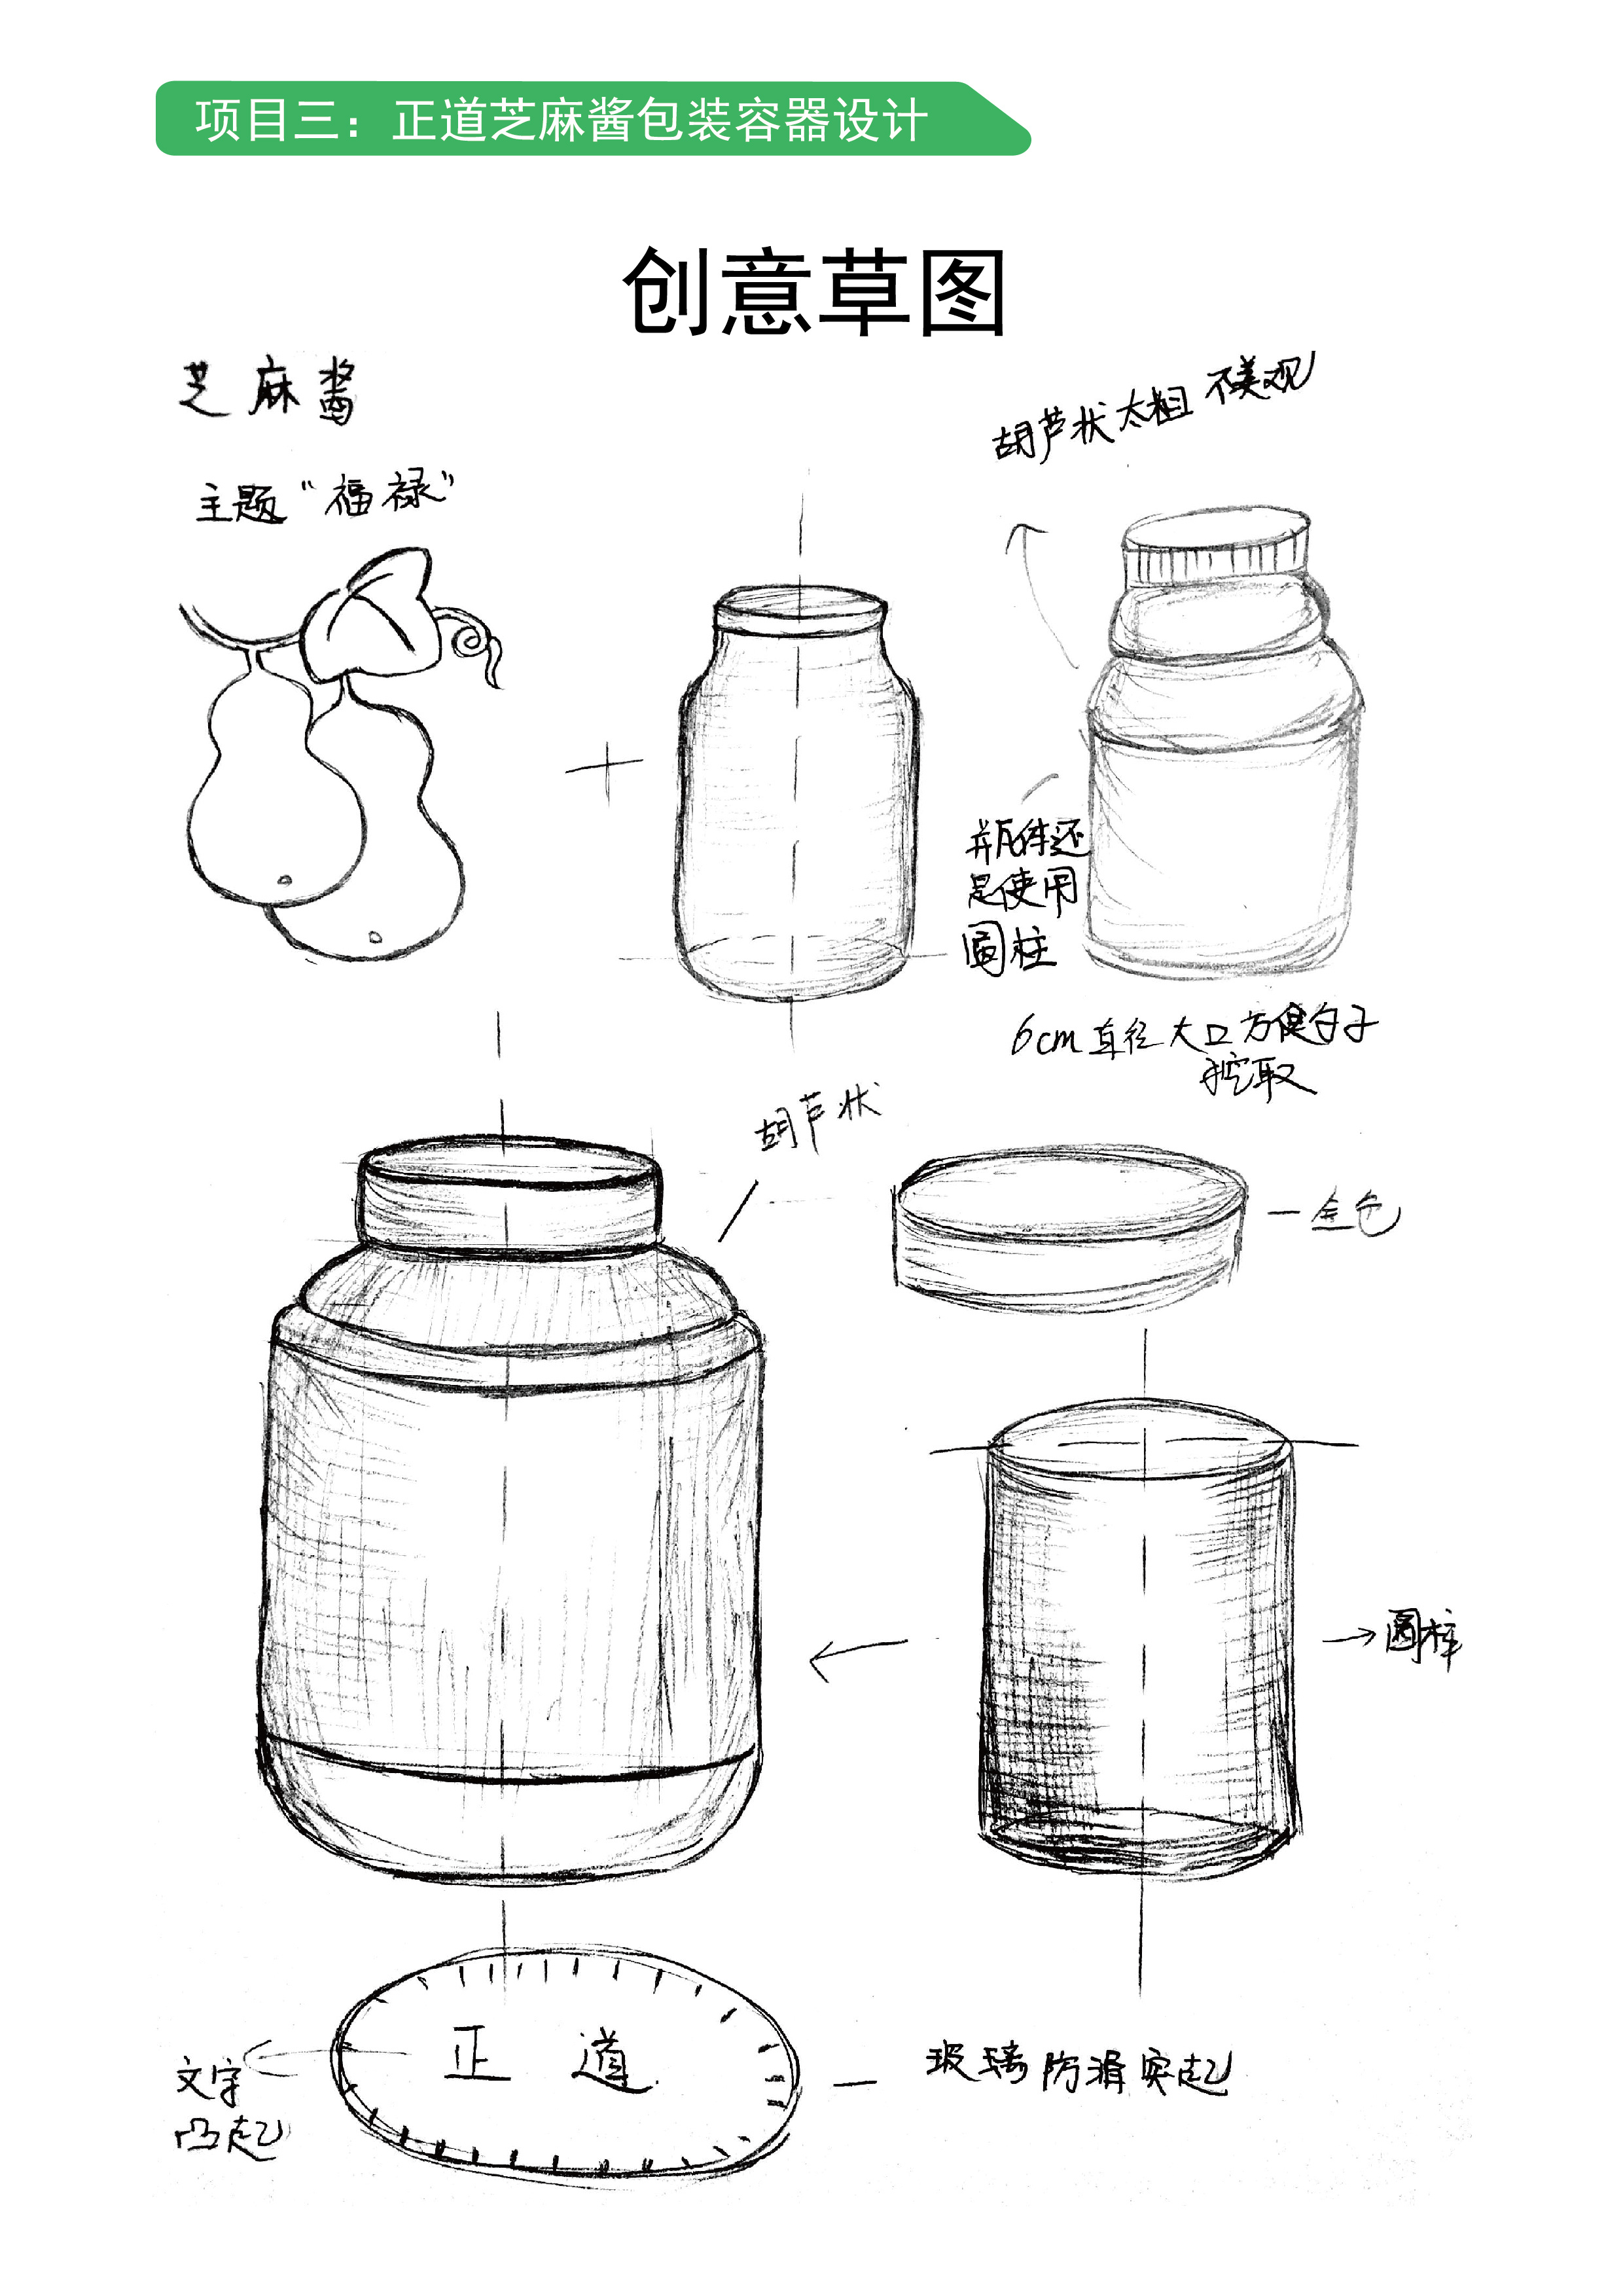 正道小磨香油 月子油 芝麻酱容器设计 包装设计